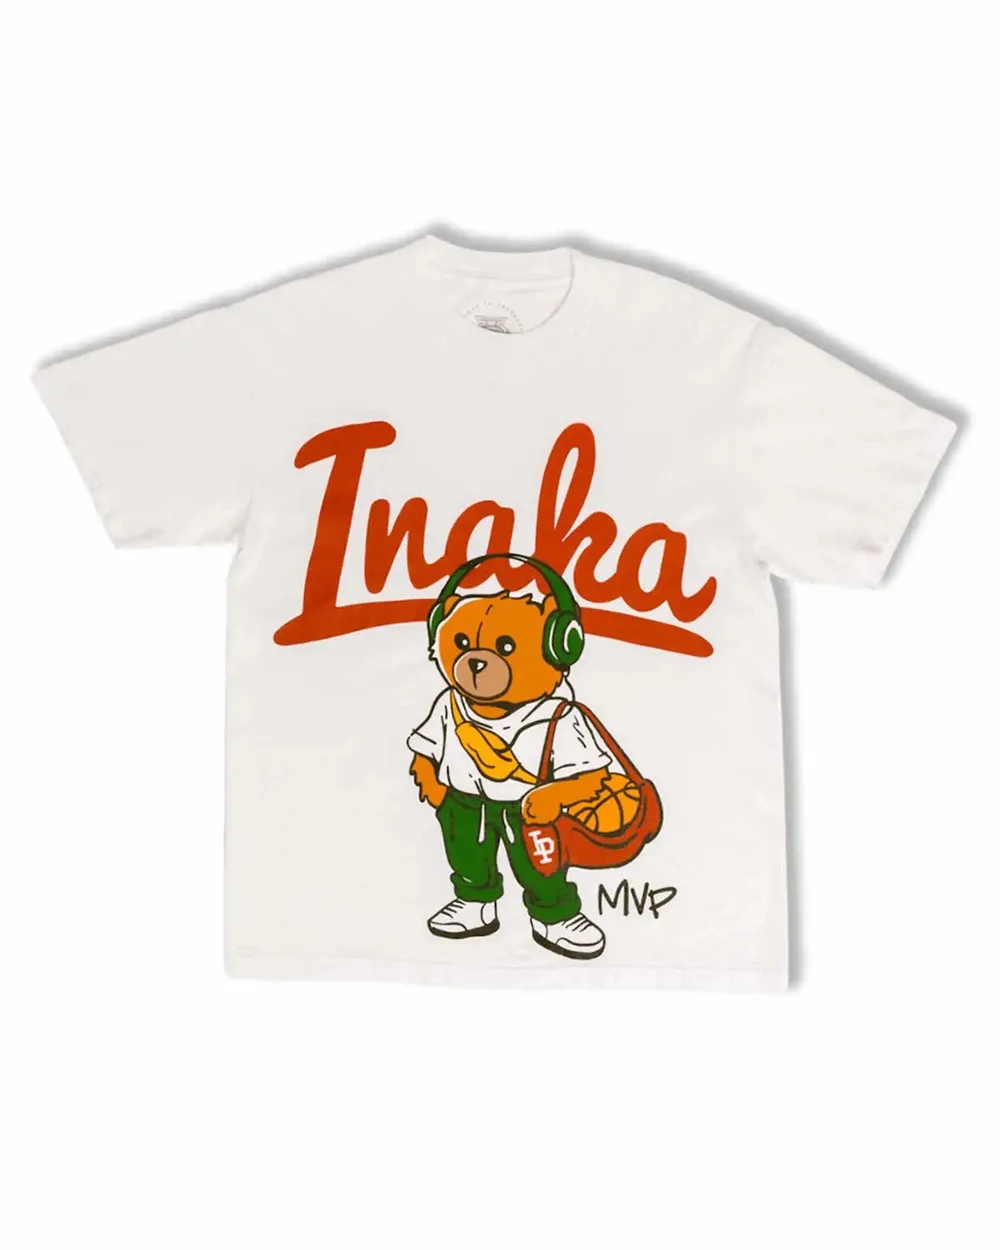 Inaka Power T-shirts surdimensionnés de taille américaine tous les jours 100% coton de haute qualité Streetwear Technique d'impression DTG Sports Basketball Gym IP Tops Tees